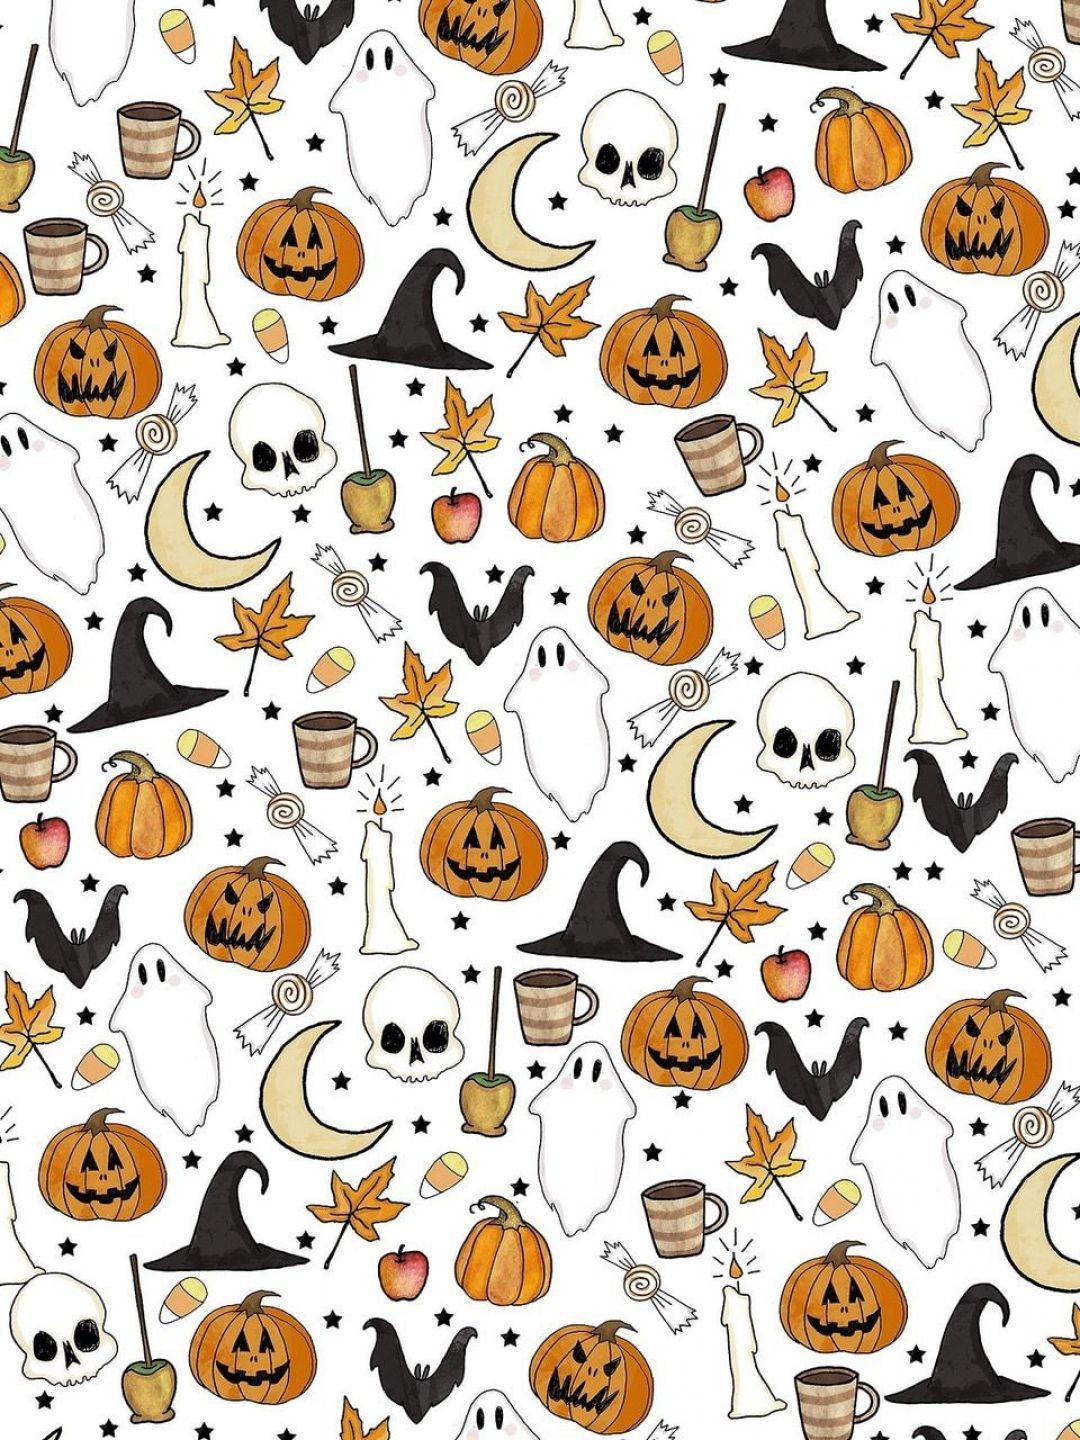 Halloween Aesthetic Girl, iPhone, Desktop HD Background / Wallpaper (1080p, 4k) (1080x1440) (2020)